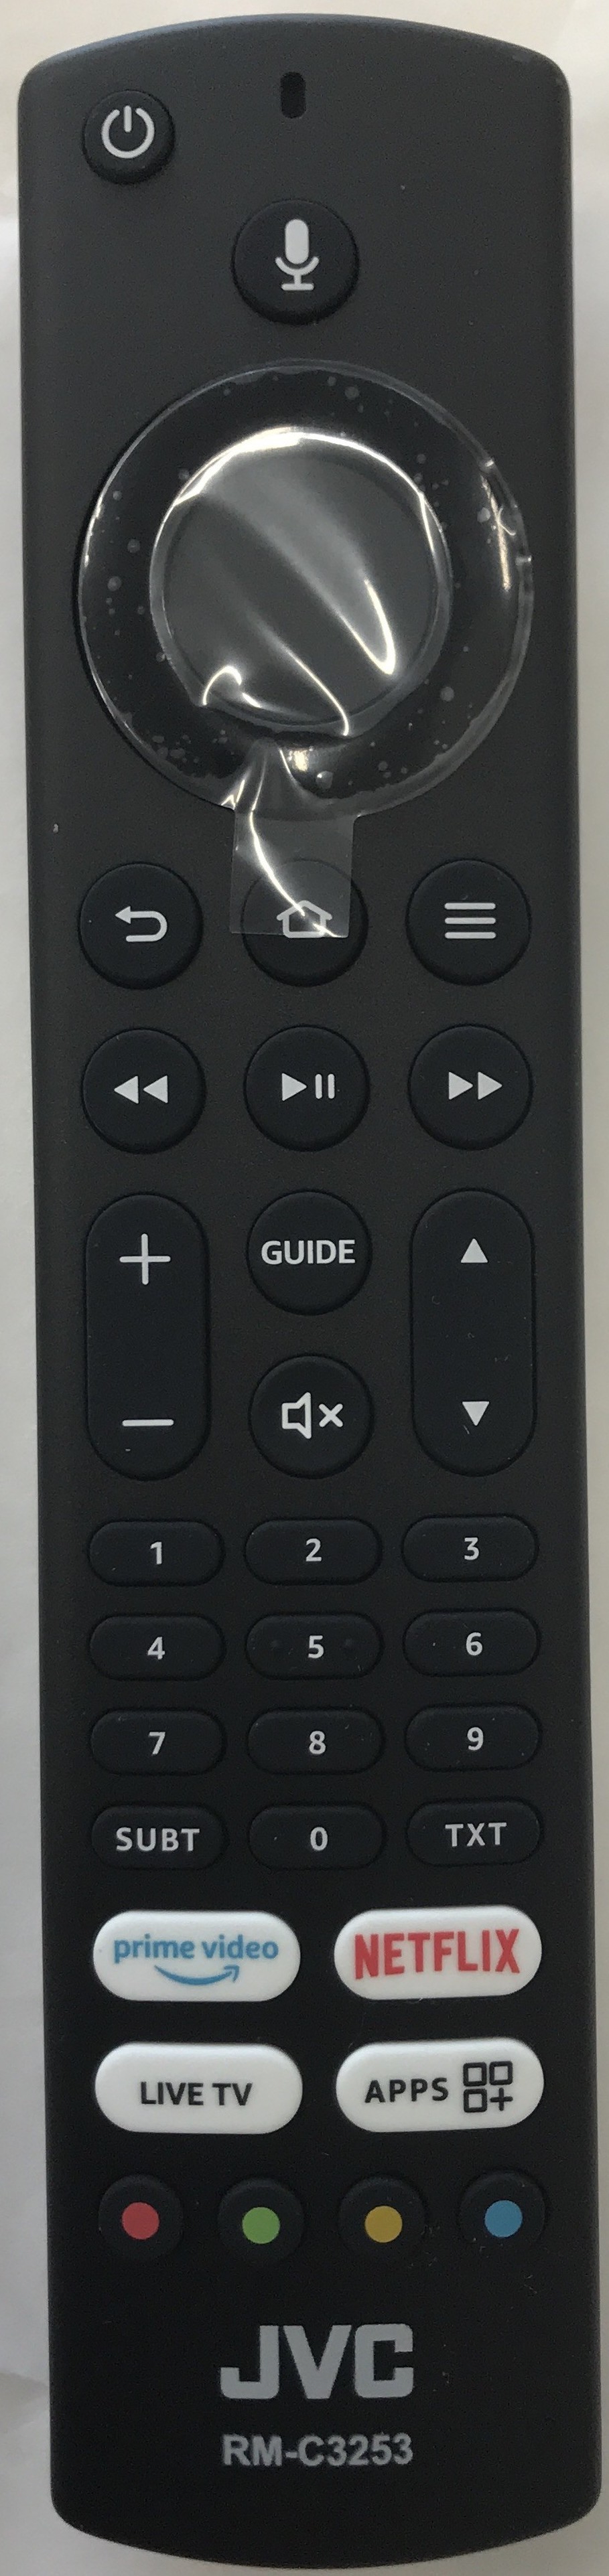 JVC 10123637 Smart Remote Control Original